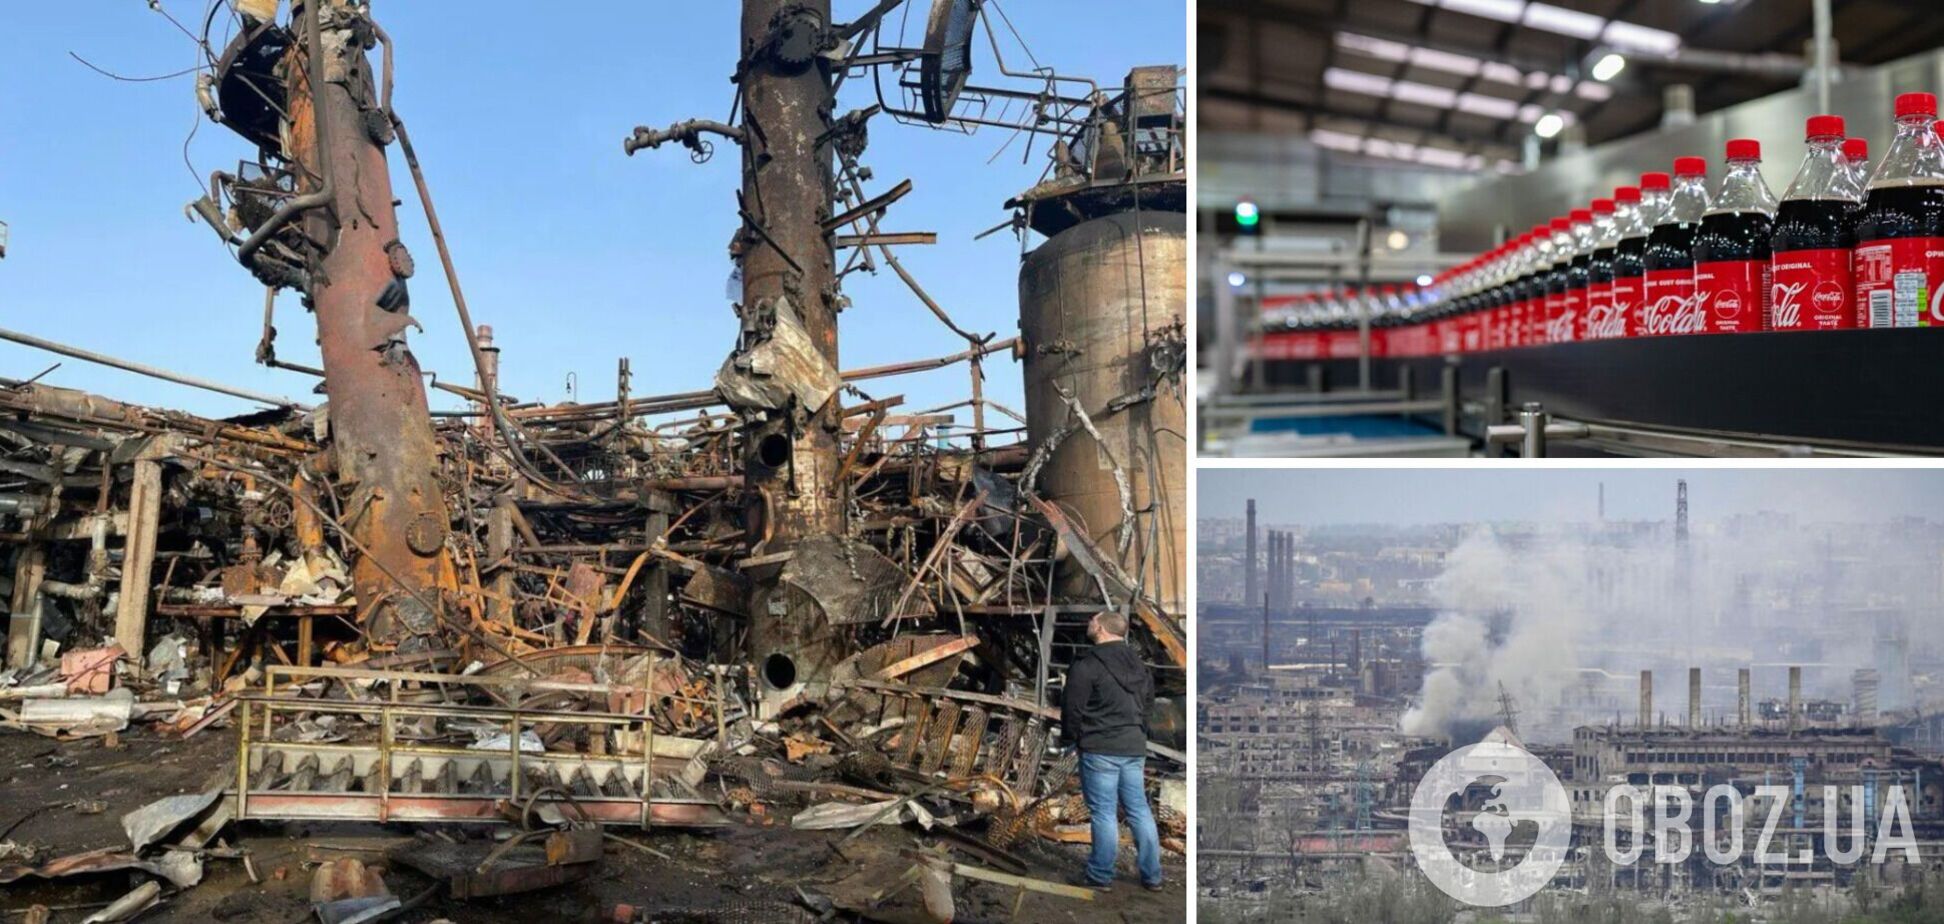 'Азовсталь', Кременчугский НПЗ и завод 'Кока-колы' полностью разрушены